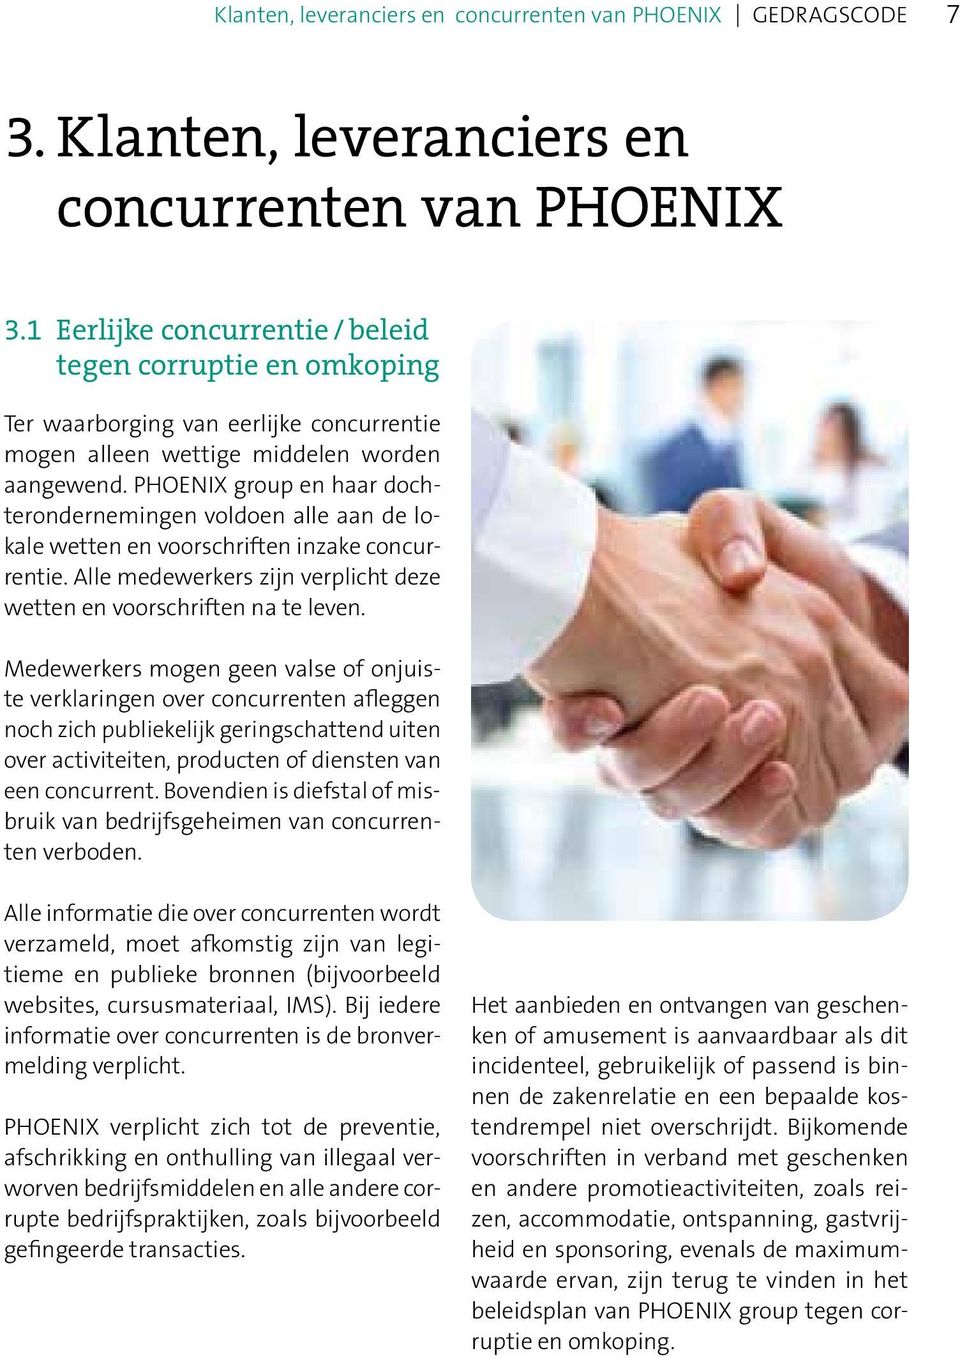 PHOENIX group en haar dochterondernemingen voldoen alle aan de lokale wetten en voorschriften inzake concurrentie. Alle medewerkers zijn verplicht deze wetten en voorschriften na te leven.